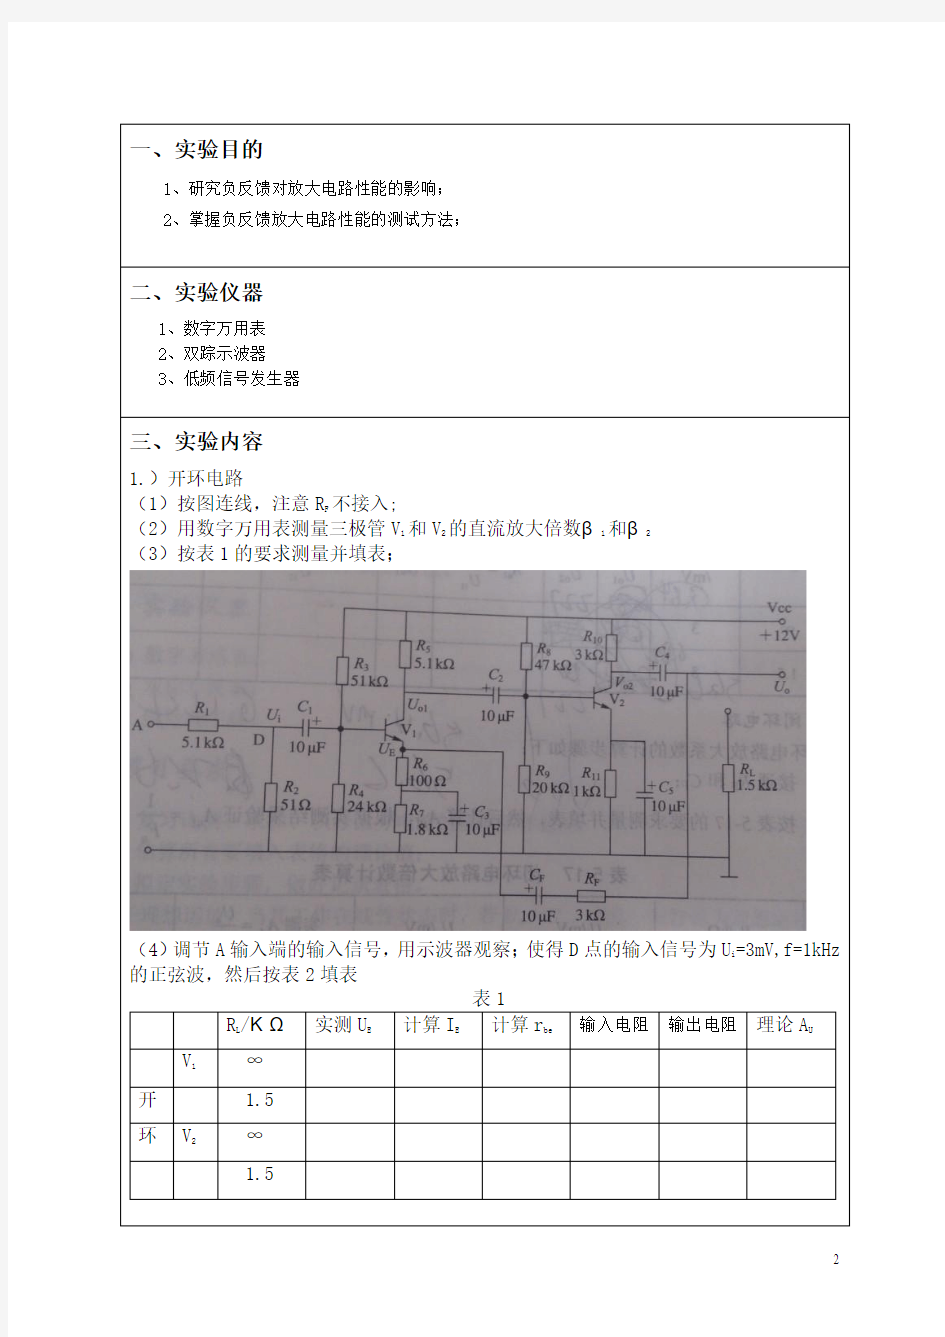 深圳大学模拟电路负反馈电路实验报告